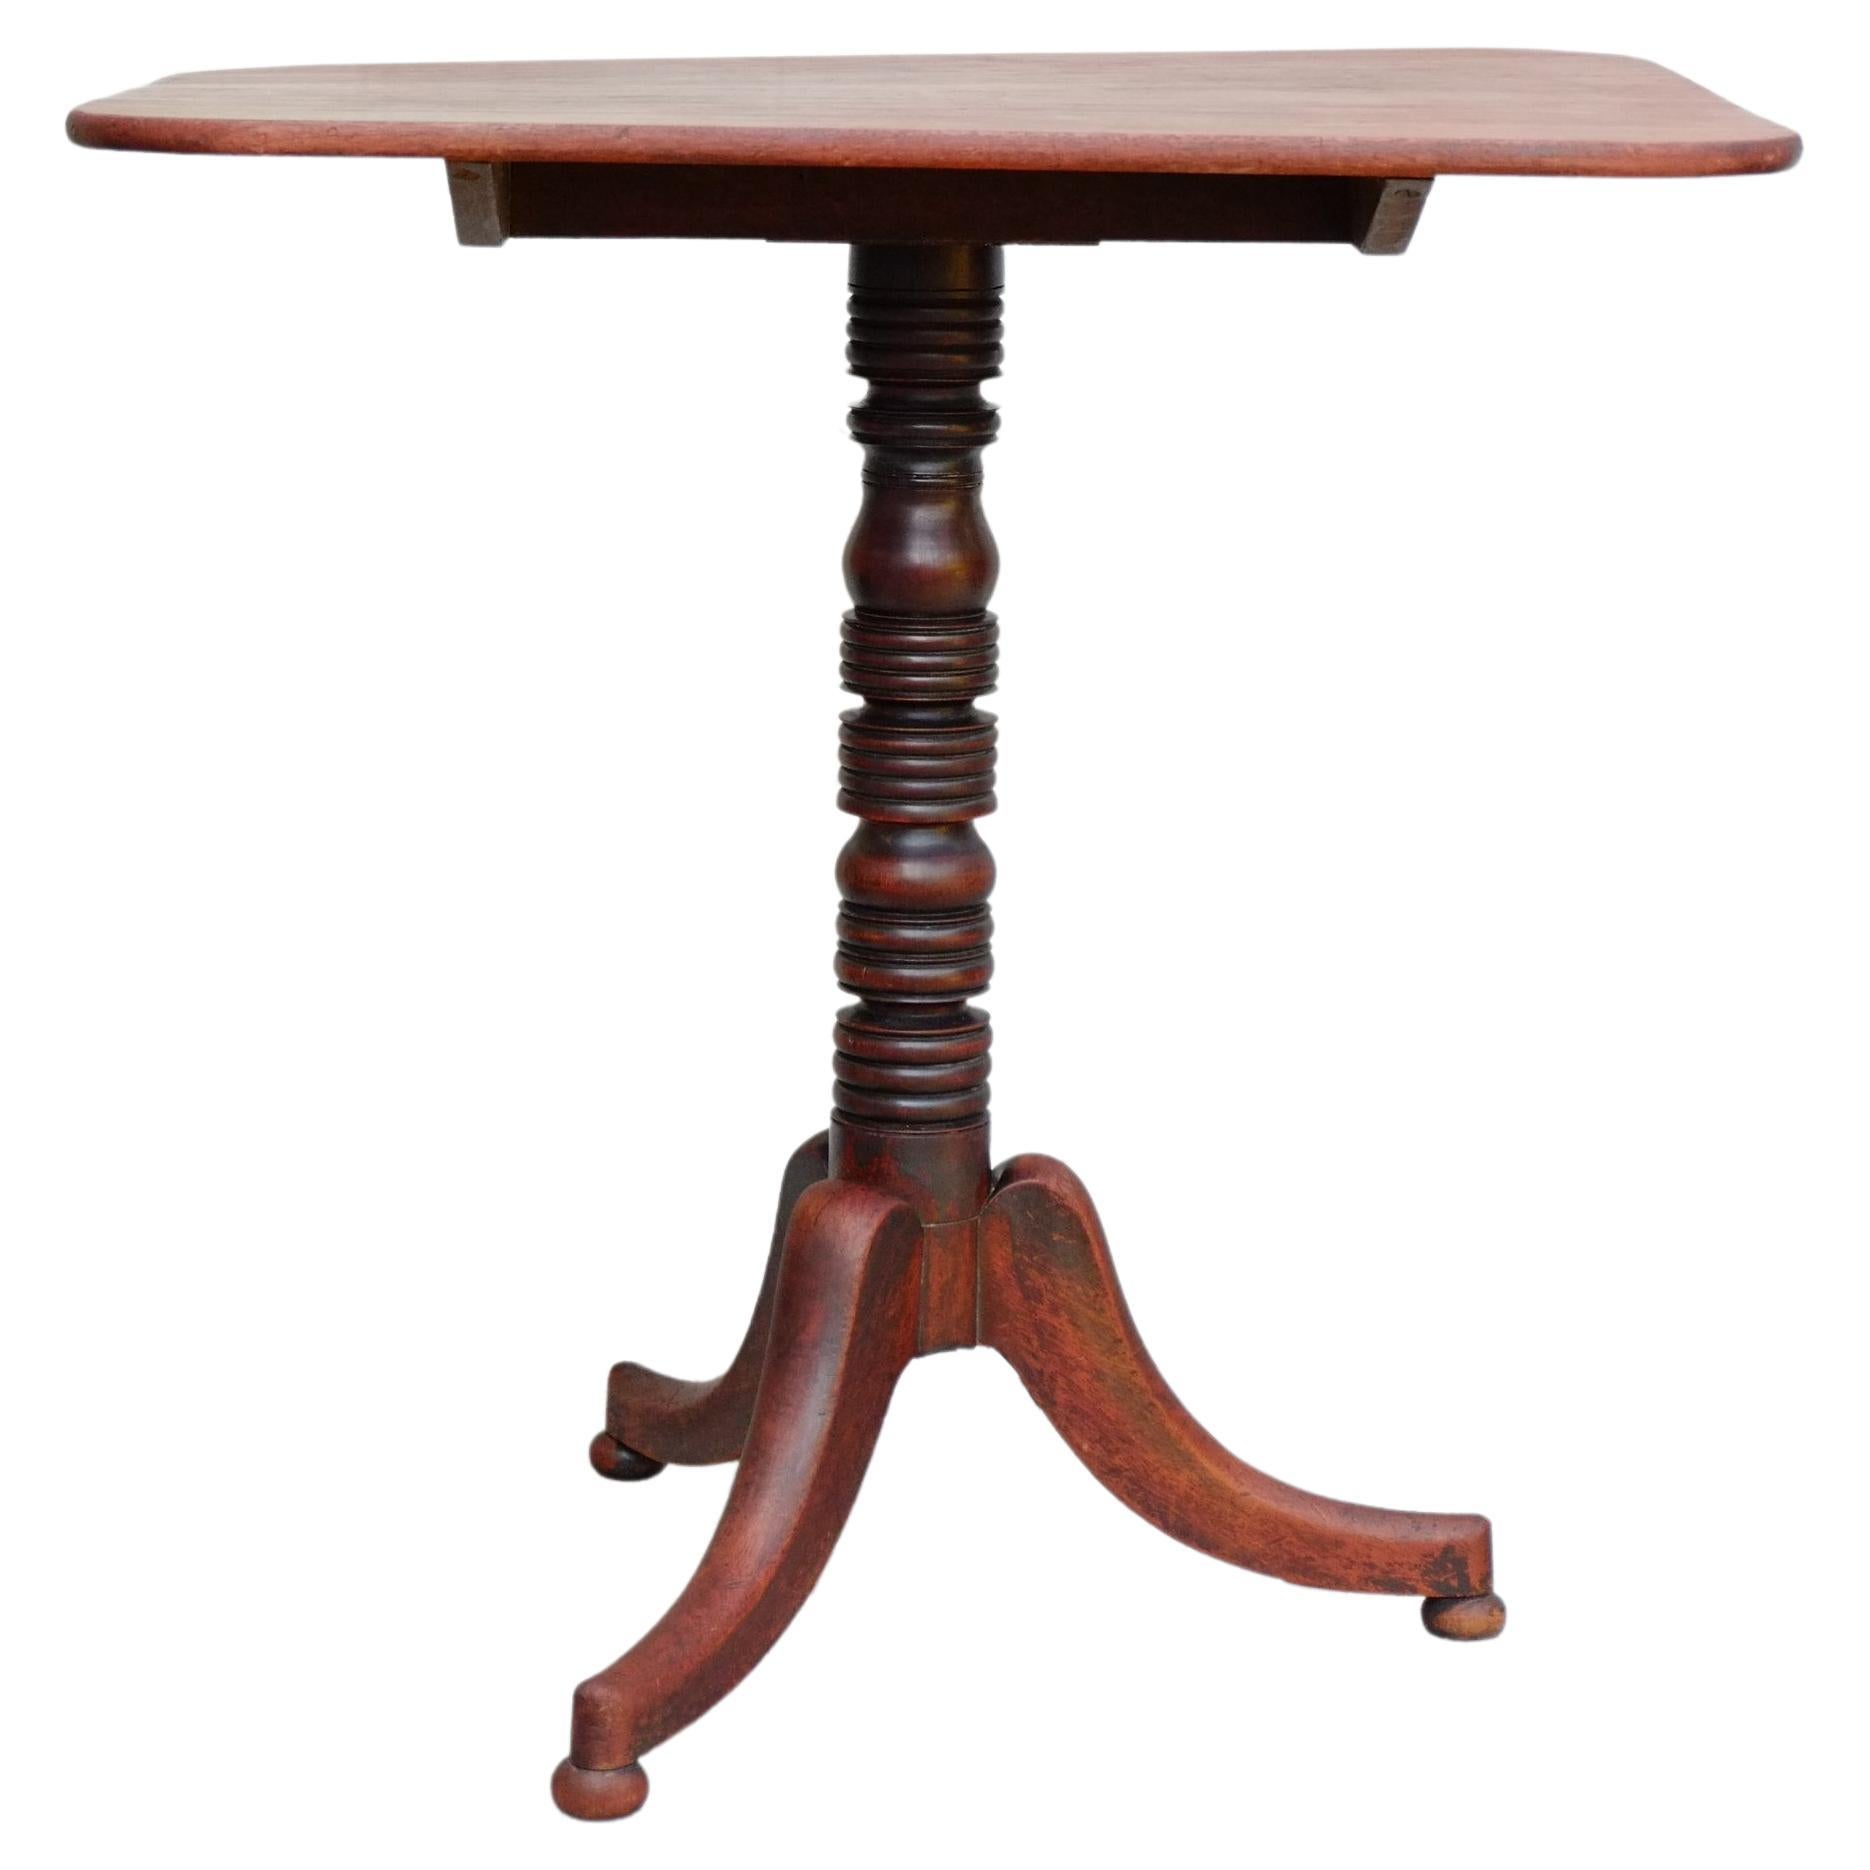 Ein schöner englischer Mahagoni-Tisch mit Kippplatte. Dieser Tisch hat die schönsten einfachen Details, mit einem gedrechselten Sockel auf drei einfachen Cabriole-Beinen mit kleinen Duttfüßen. Die Tischplatte ist ein sehr funktionales, weiches